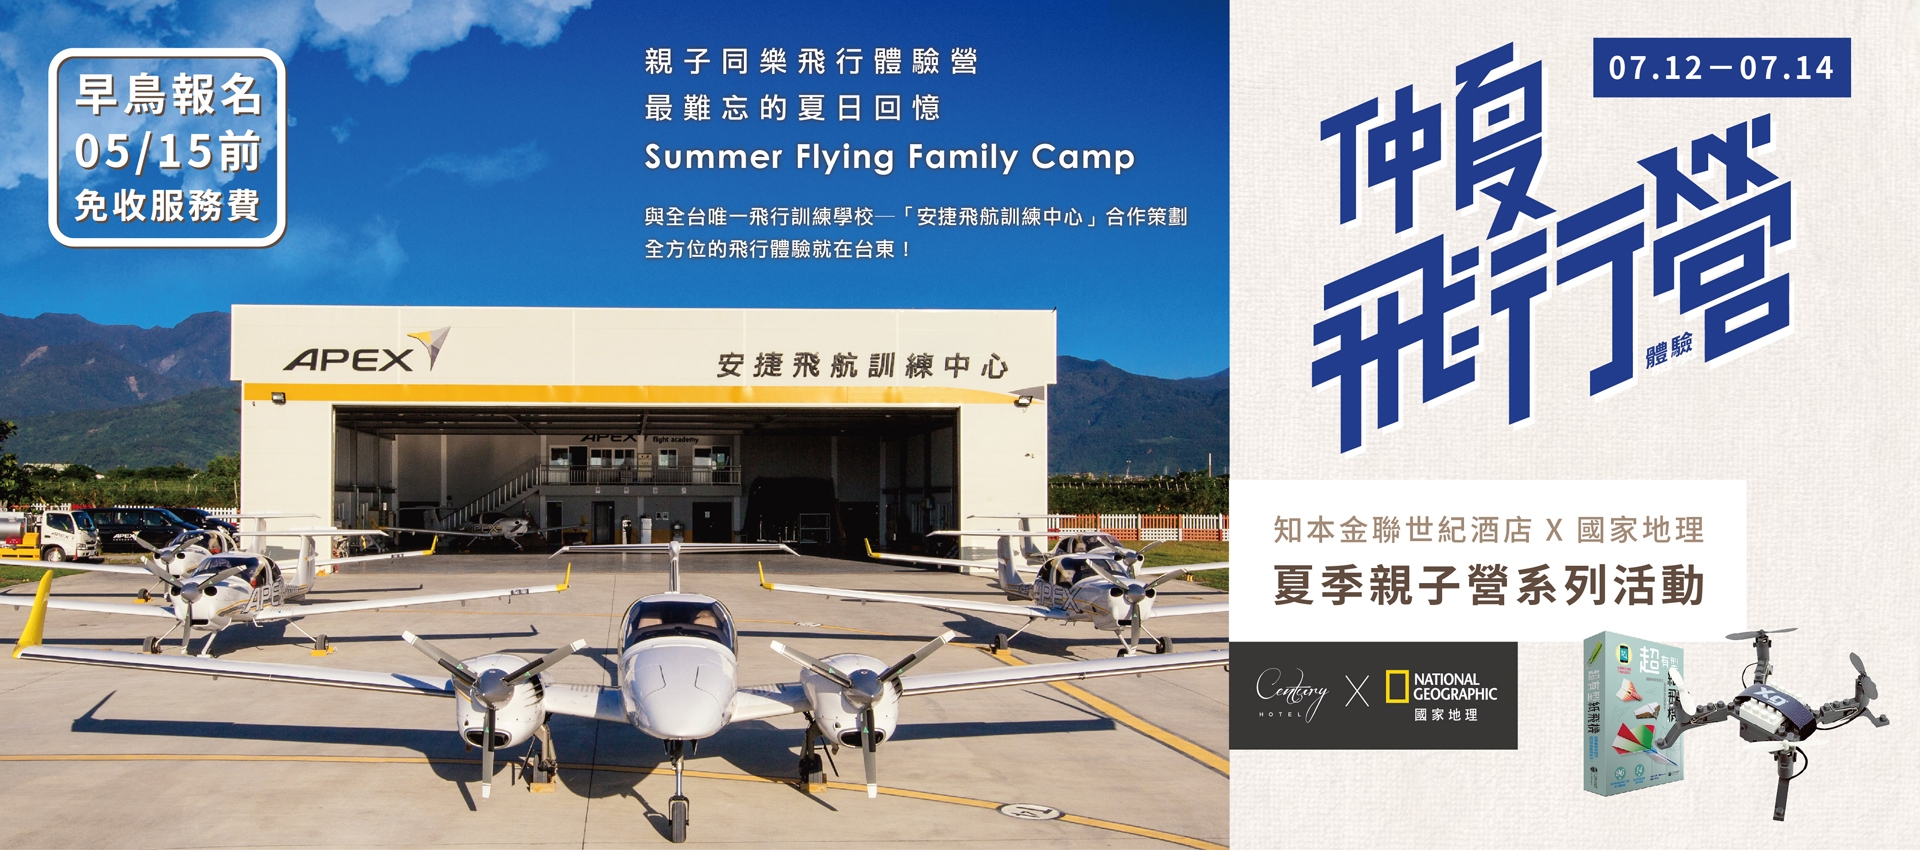 國家地理X知本金聯 - 仲夏飛行體驗營